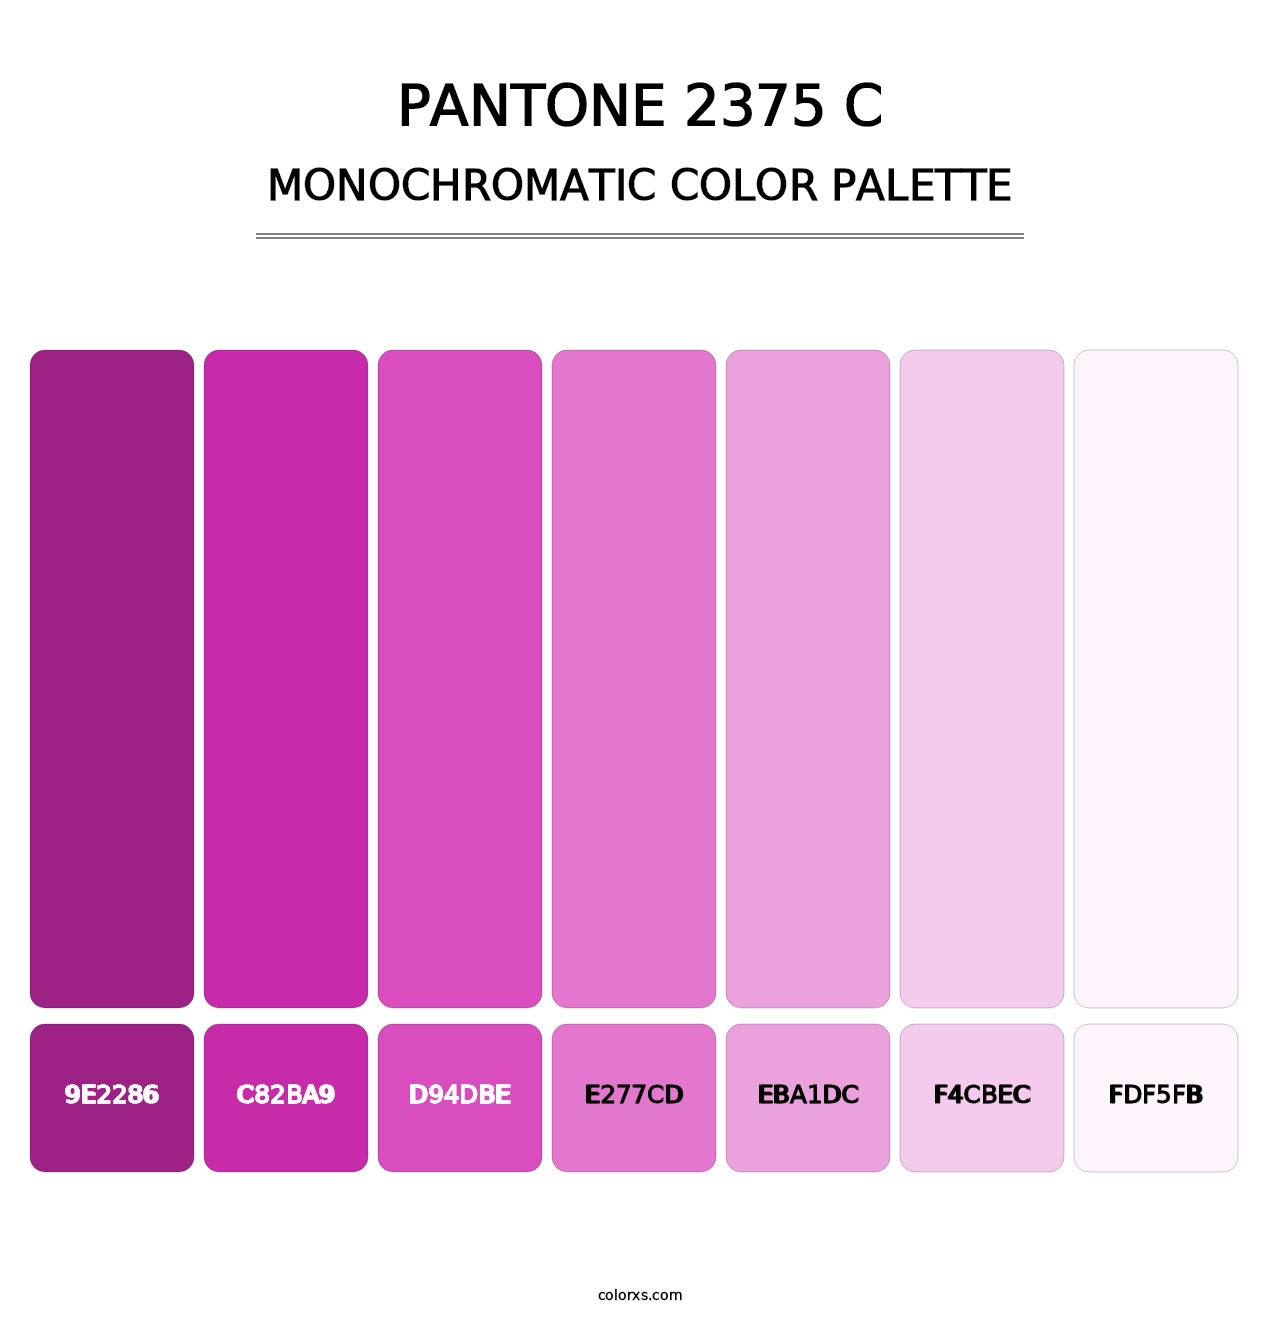 PANTONE 2375 C - Monochromatic Color Palette